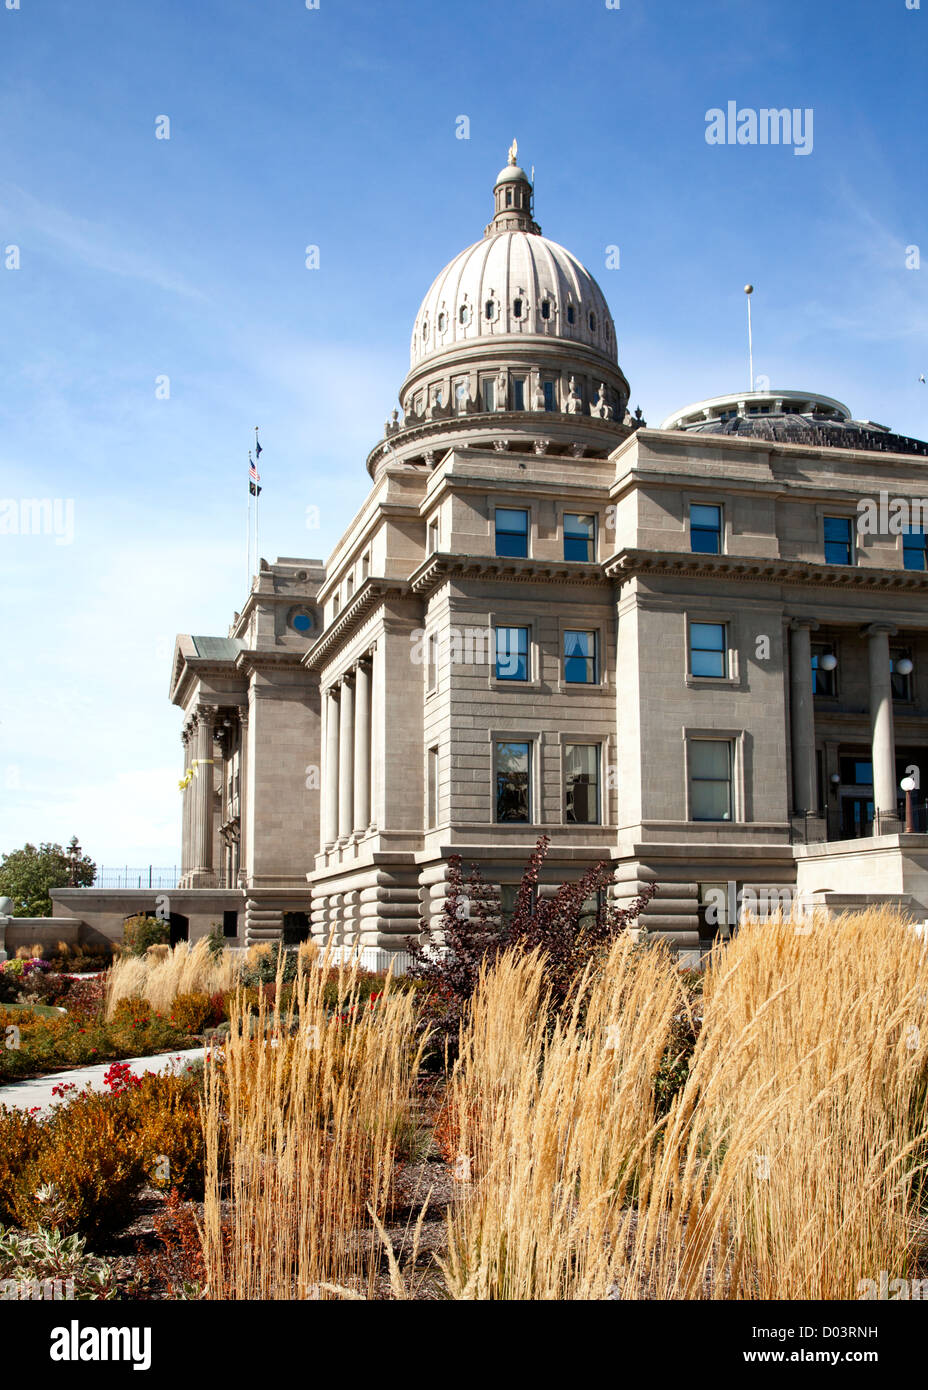 Idaho State Capitol building à Boise, Idaho. Octobre, 2012 Banque D'Images